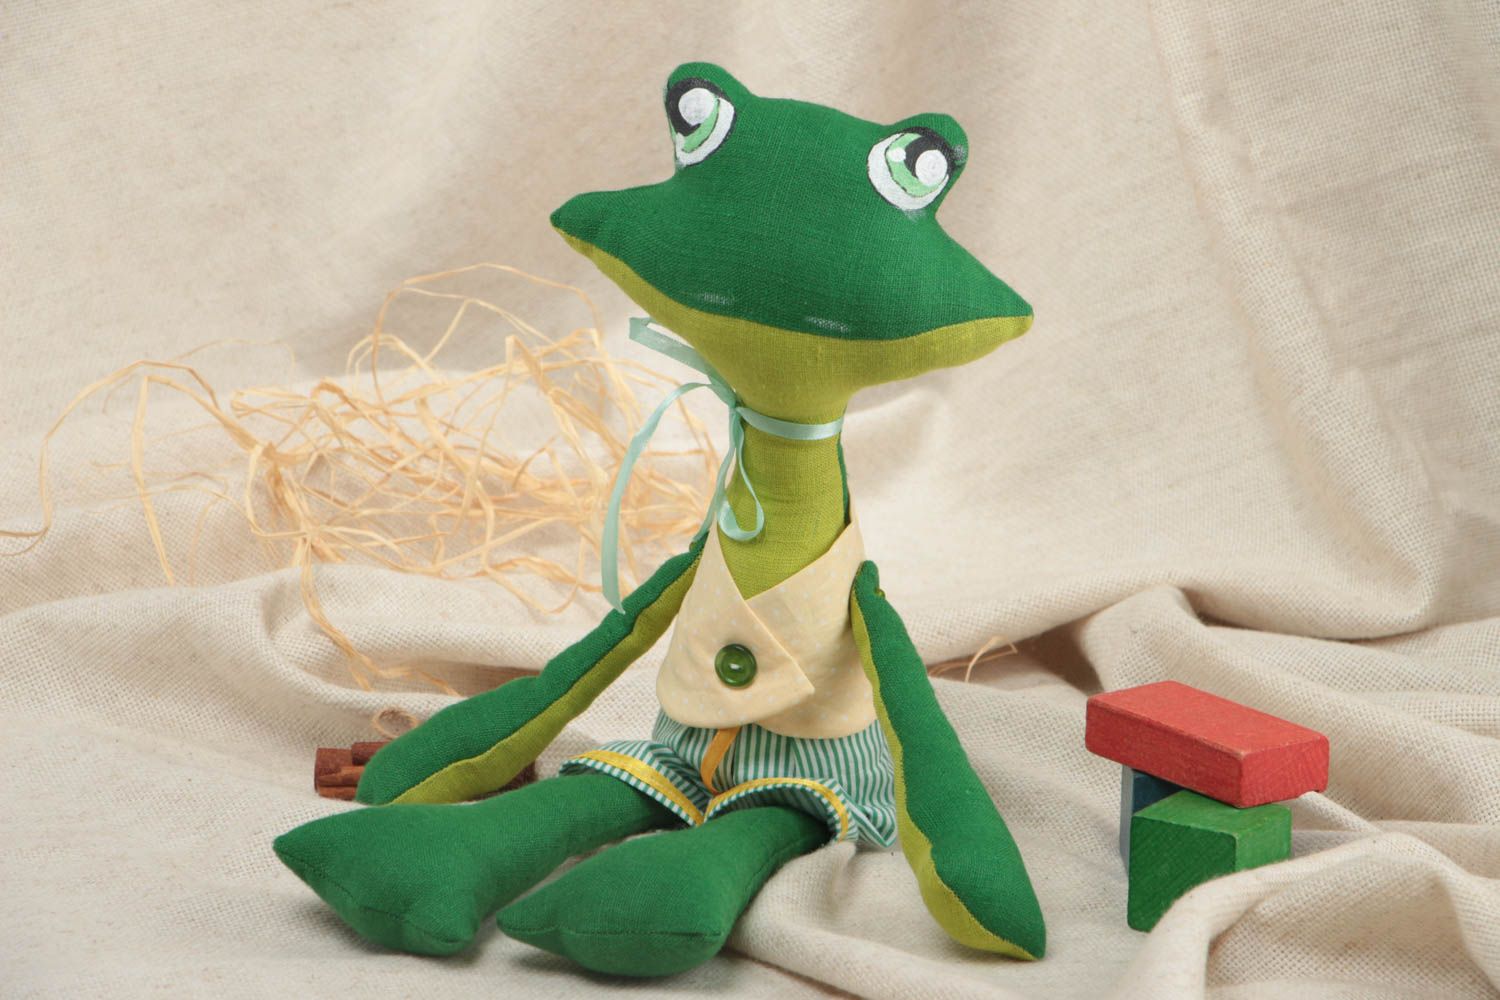 Jouet décoratif en tissu fait main design original peint pour enfant grenouille photo 1